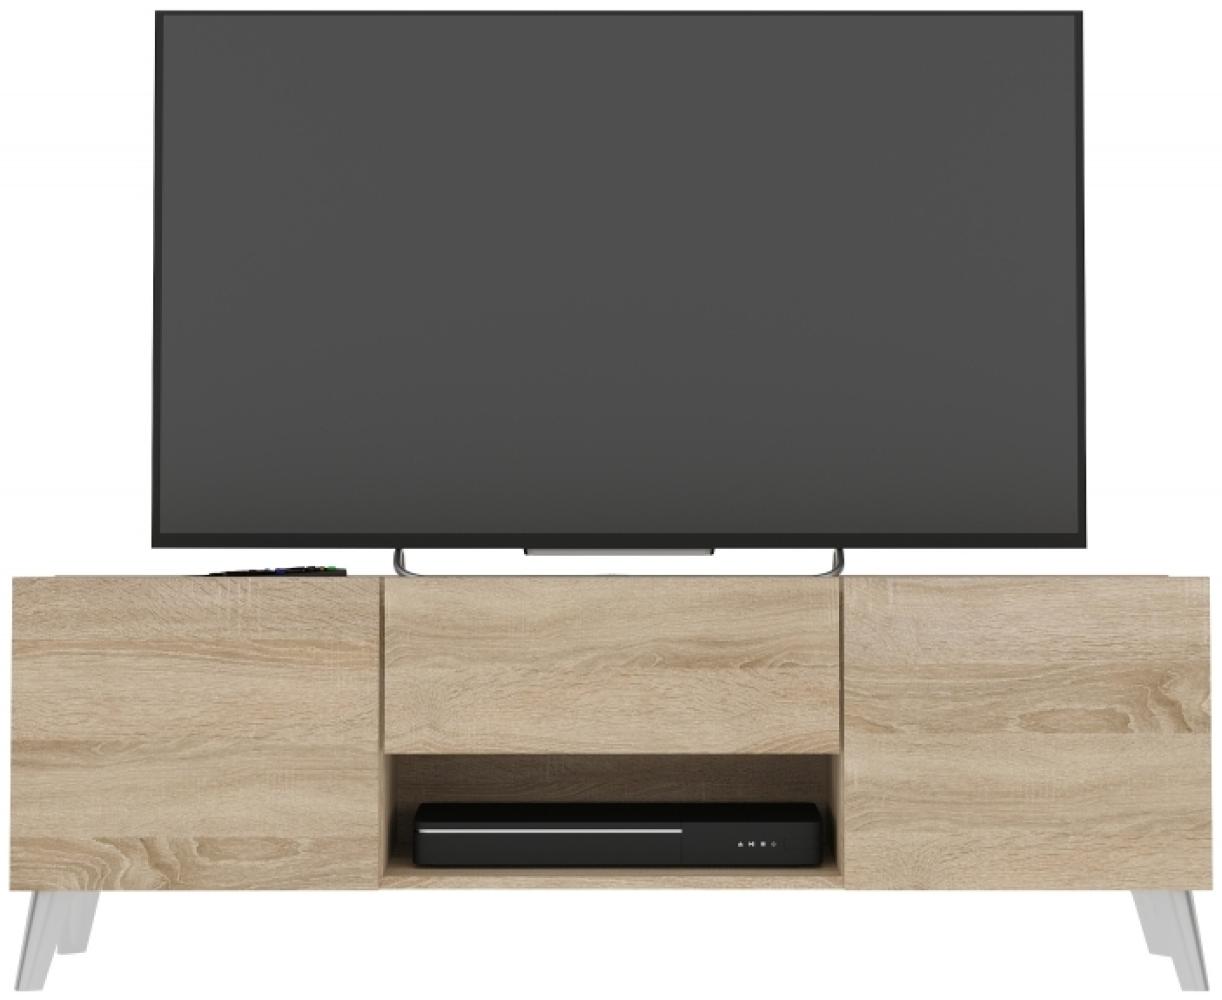 Lowboard stehend / hängend montierbar BRIGHTON Hifi TV Eiche Sägerau Sonoma ca. 140 x 35 x 35 cm Bild 1